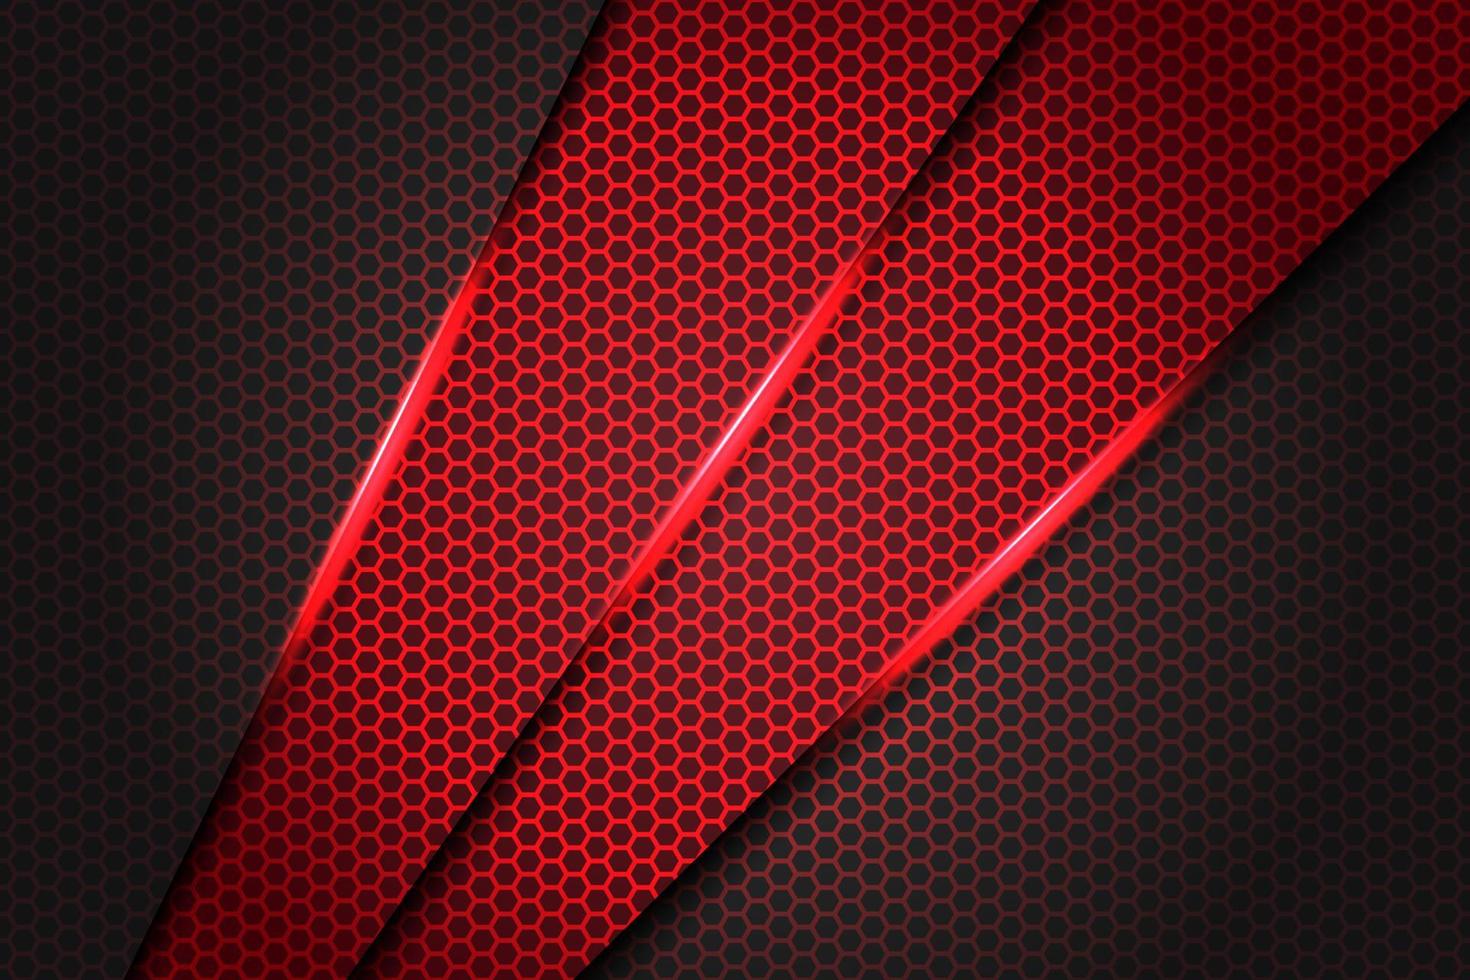 abstracte rode schuine streep driehoek metallic op donkergrijs met zeshoek mesh patroon ontwerp moderne futuristische achtergrond textuur vectorillustratie. vector